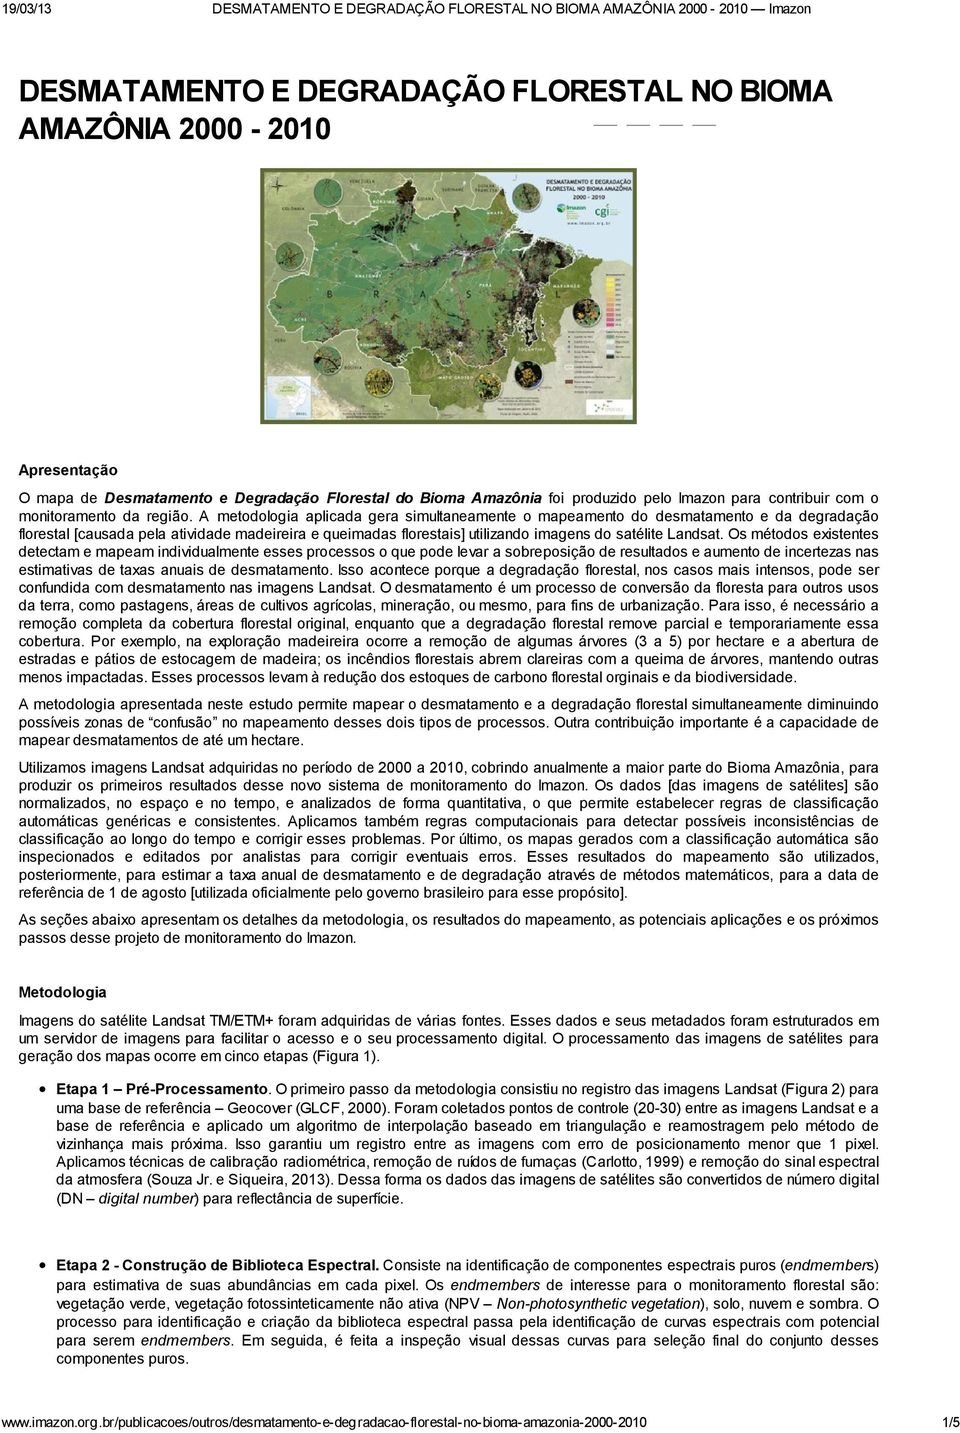 A metodologia aplicada gera simultaneamente o mapeamento do desmatamento e da degradação florestal [causada pela atividade madeireira e queimadas florestais] utilizando imagens do satélite Landsat.